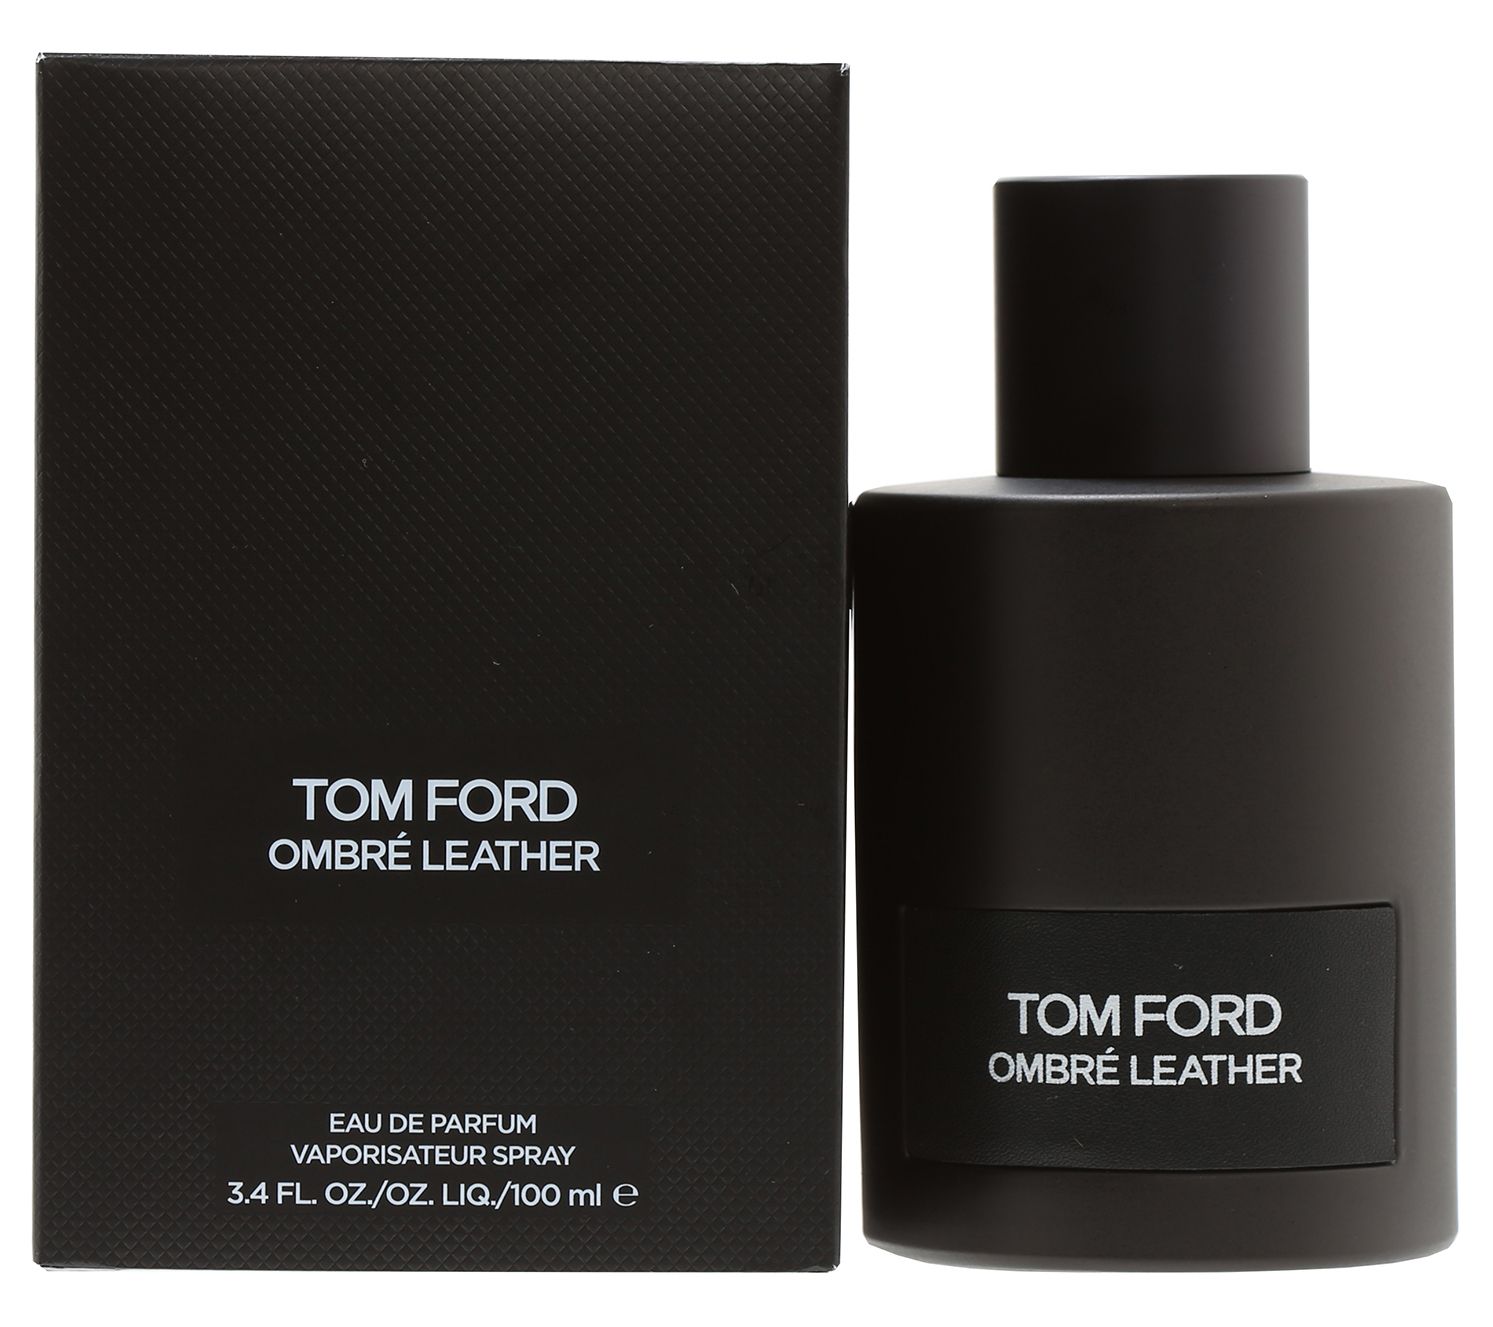 Tom Ford Ombre Leather Eau de Parfum Travel Spray